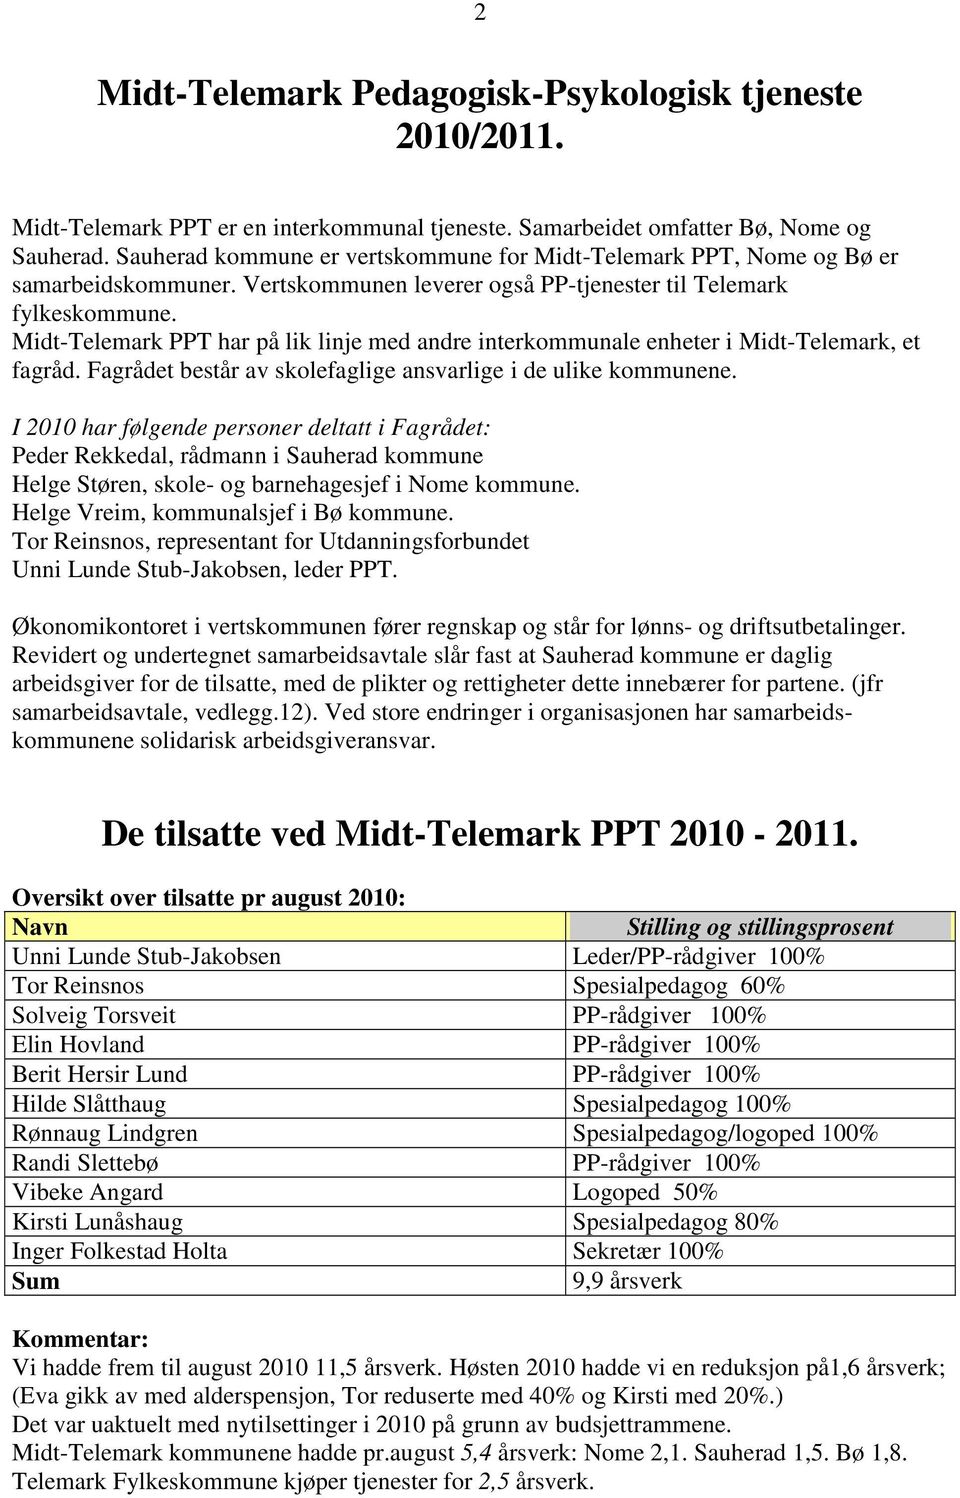 Midt-Telemark PPT har på lik linje med andre interkommunale enheter i Midt-Telemark, et fagråd. Fagrådet består av skolefaglige ansvarlige i de ulike kommunene.